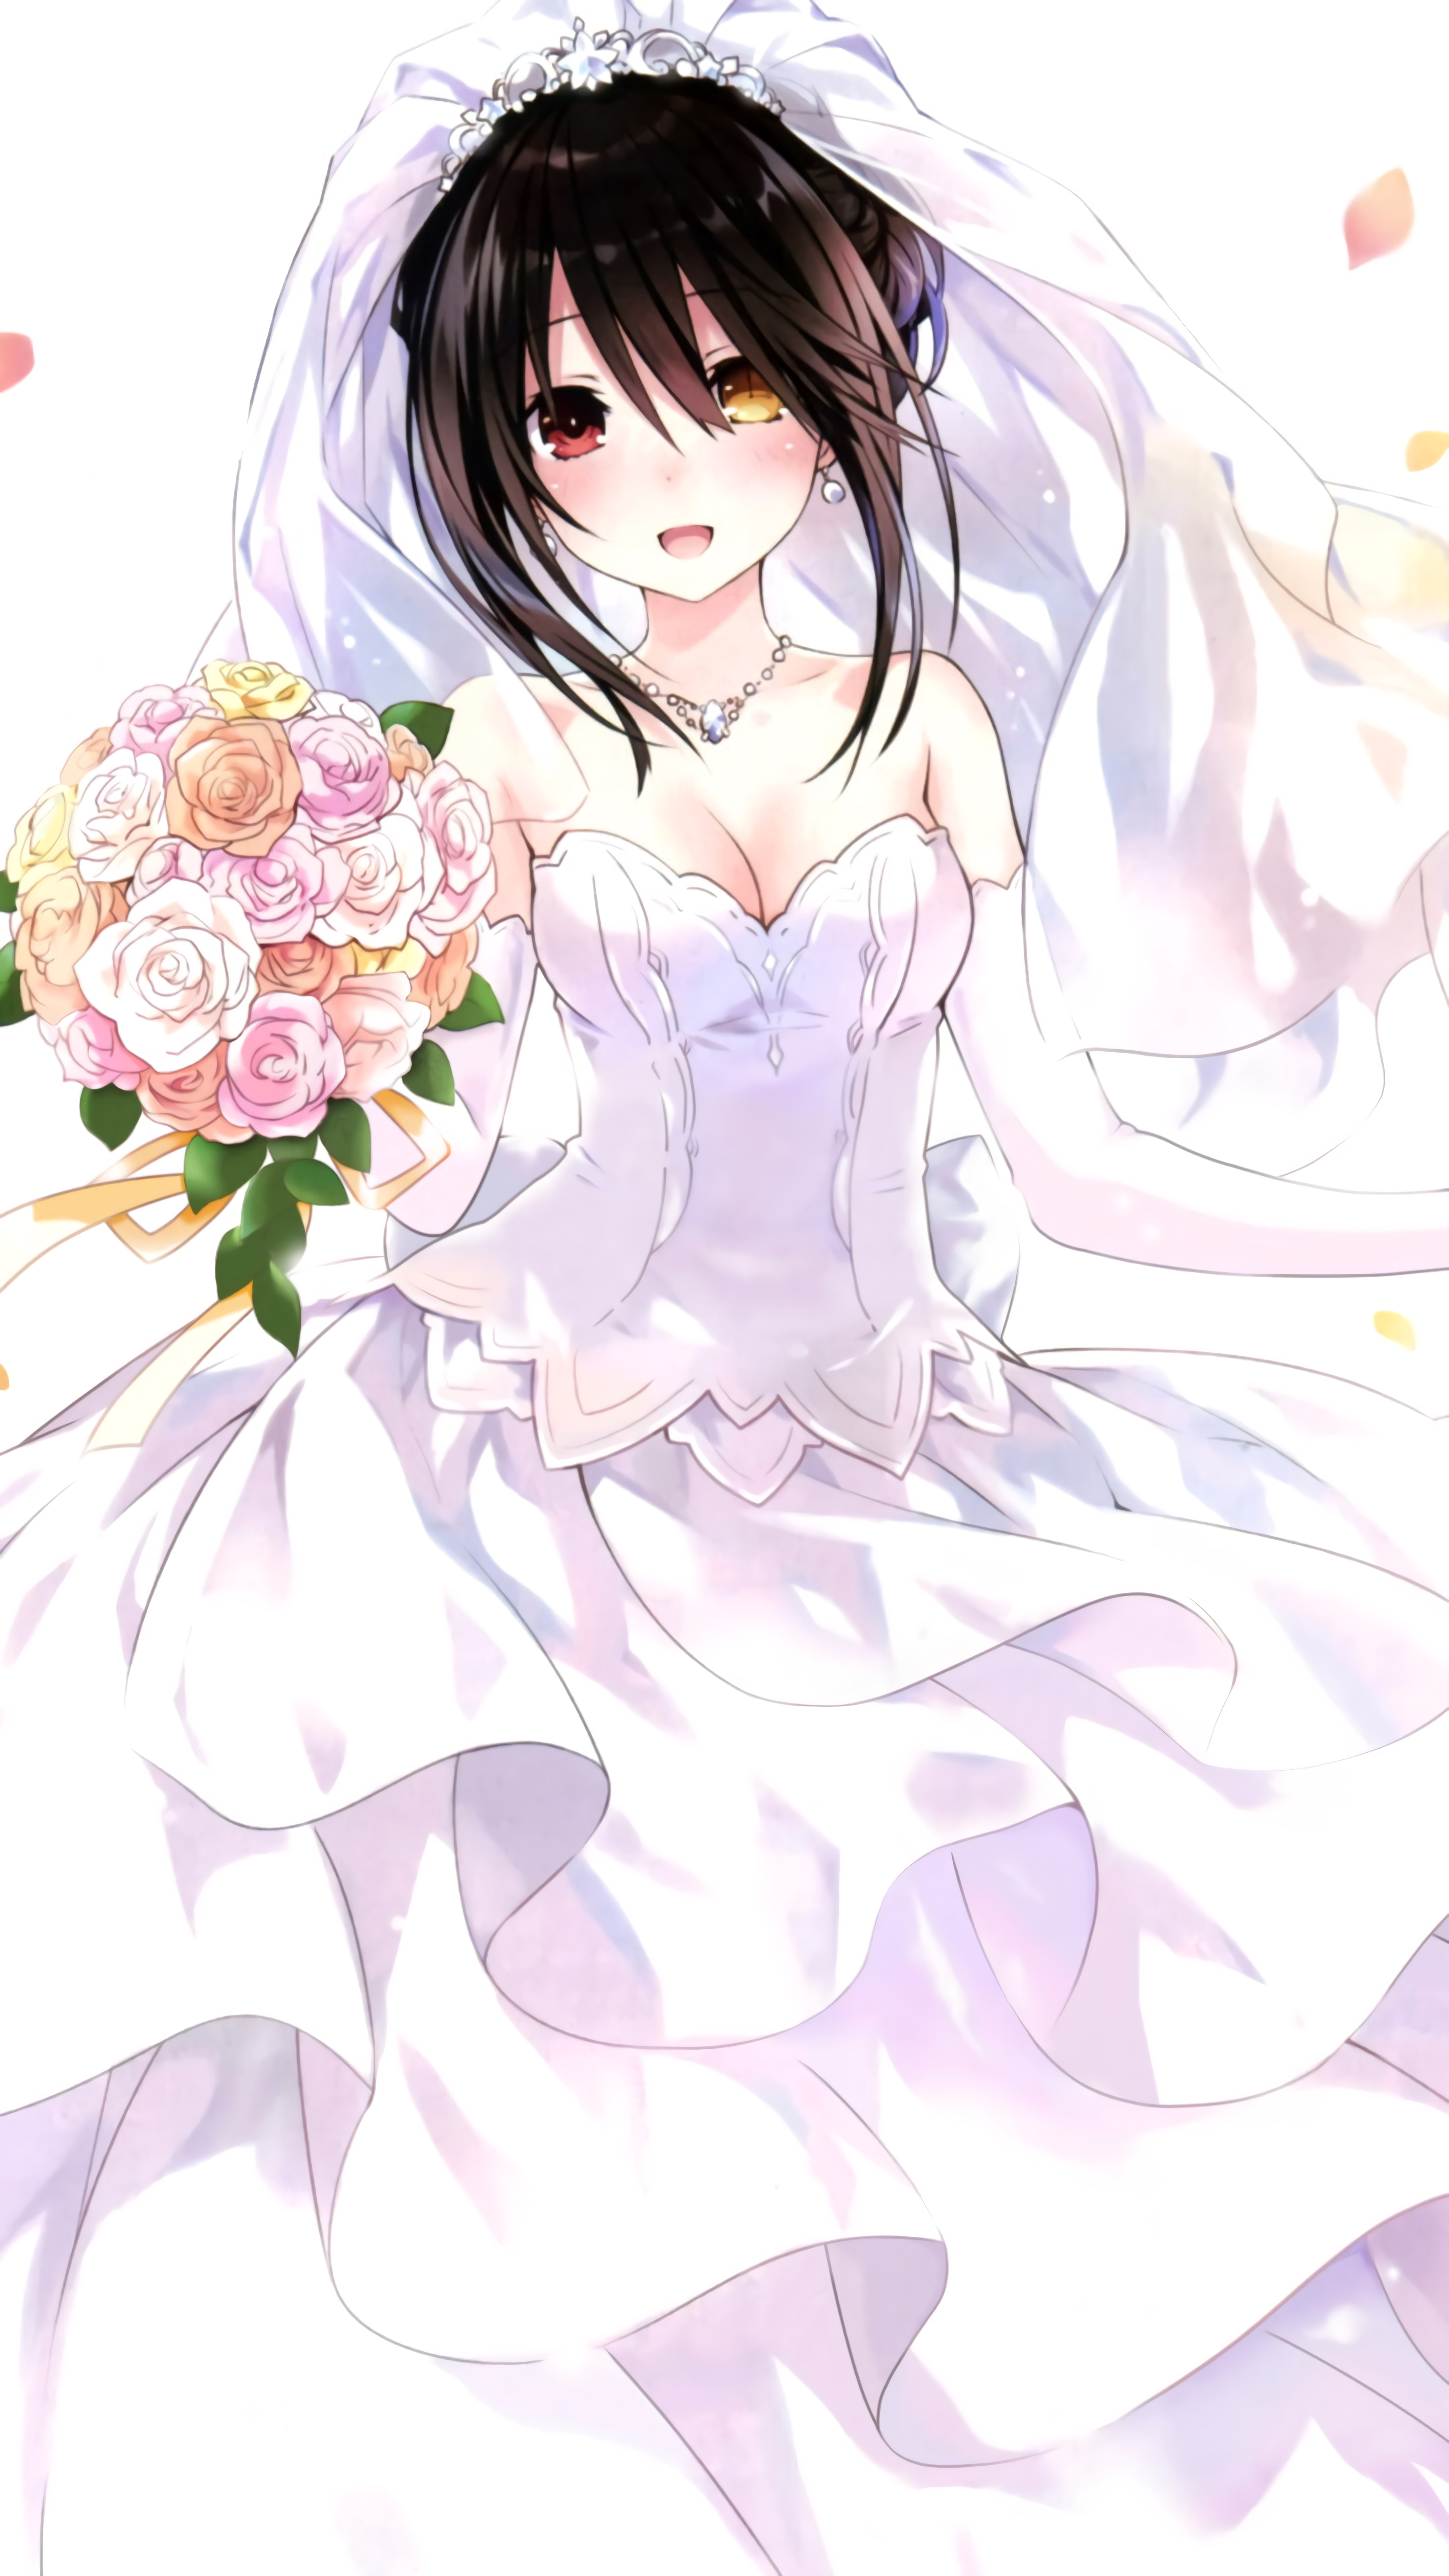 Anime 4320x7680 Tokisaki Kurumi Date A Live anime girls wedding dress cleavage flowers dark hair heterochromia Tsunako